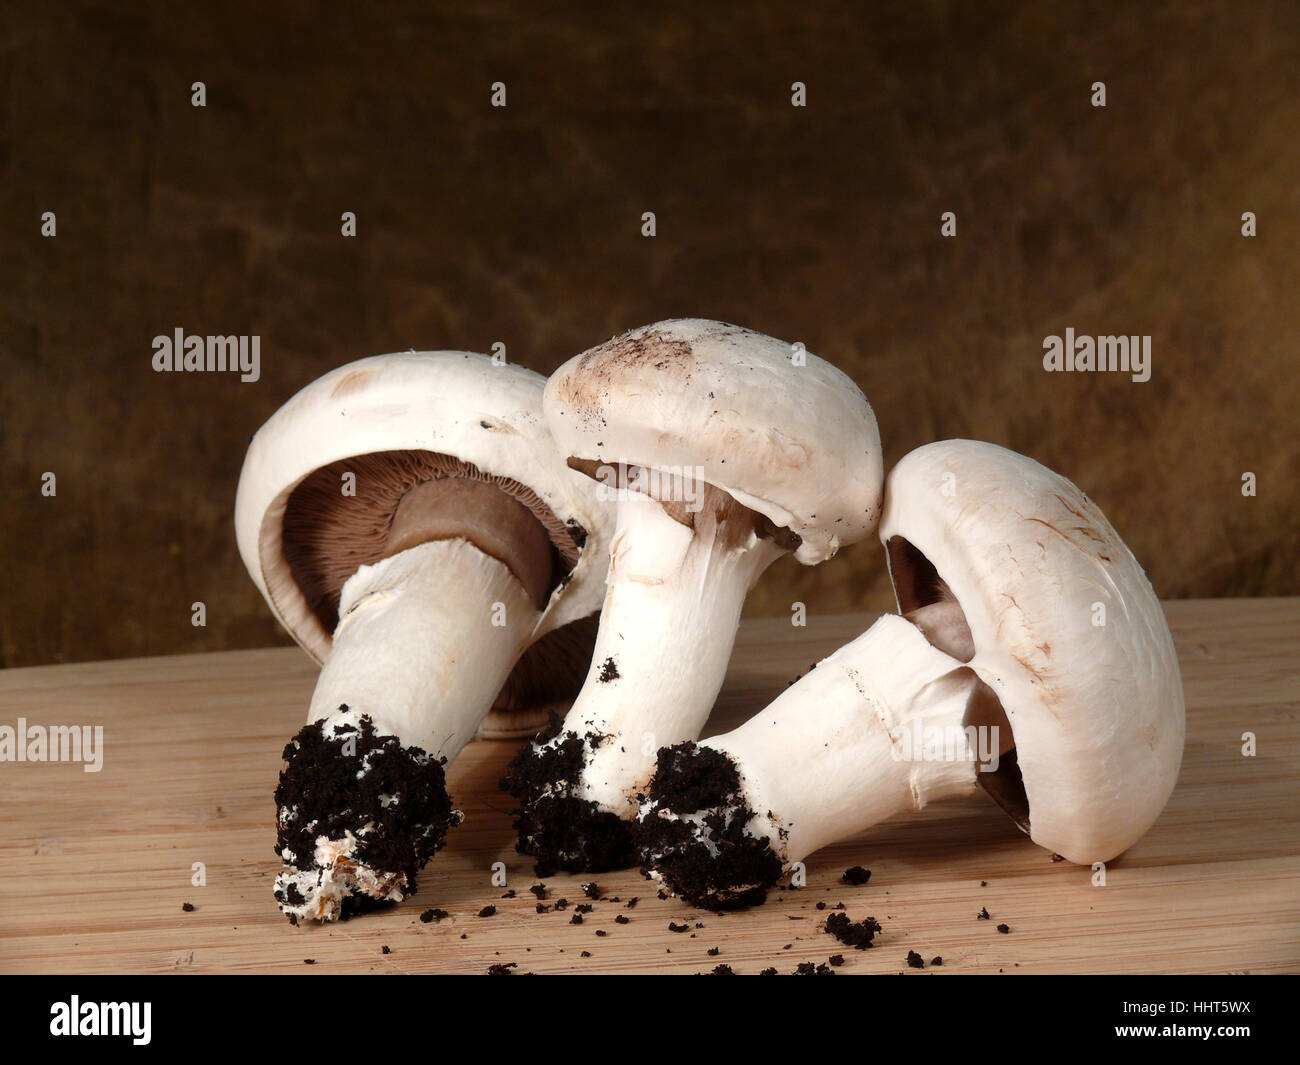 Funghi, substrato, still life, antiquariato e funghi, retrò, substrato, Foto Stock